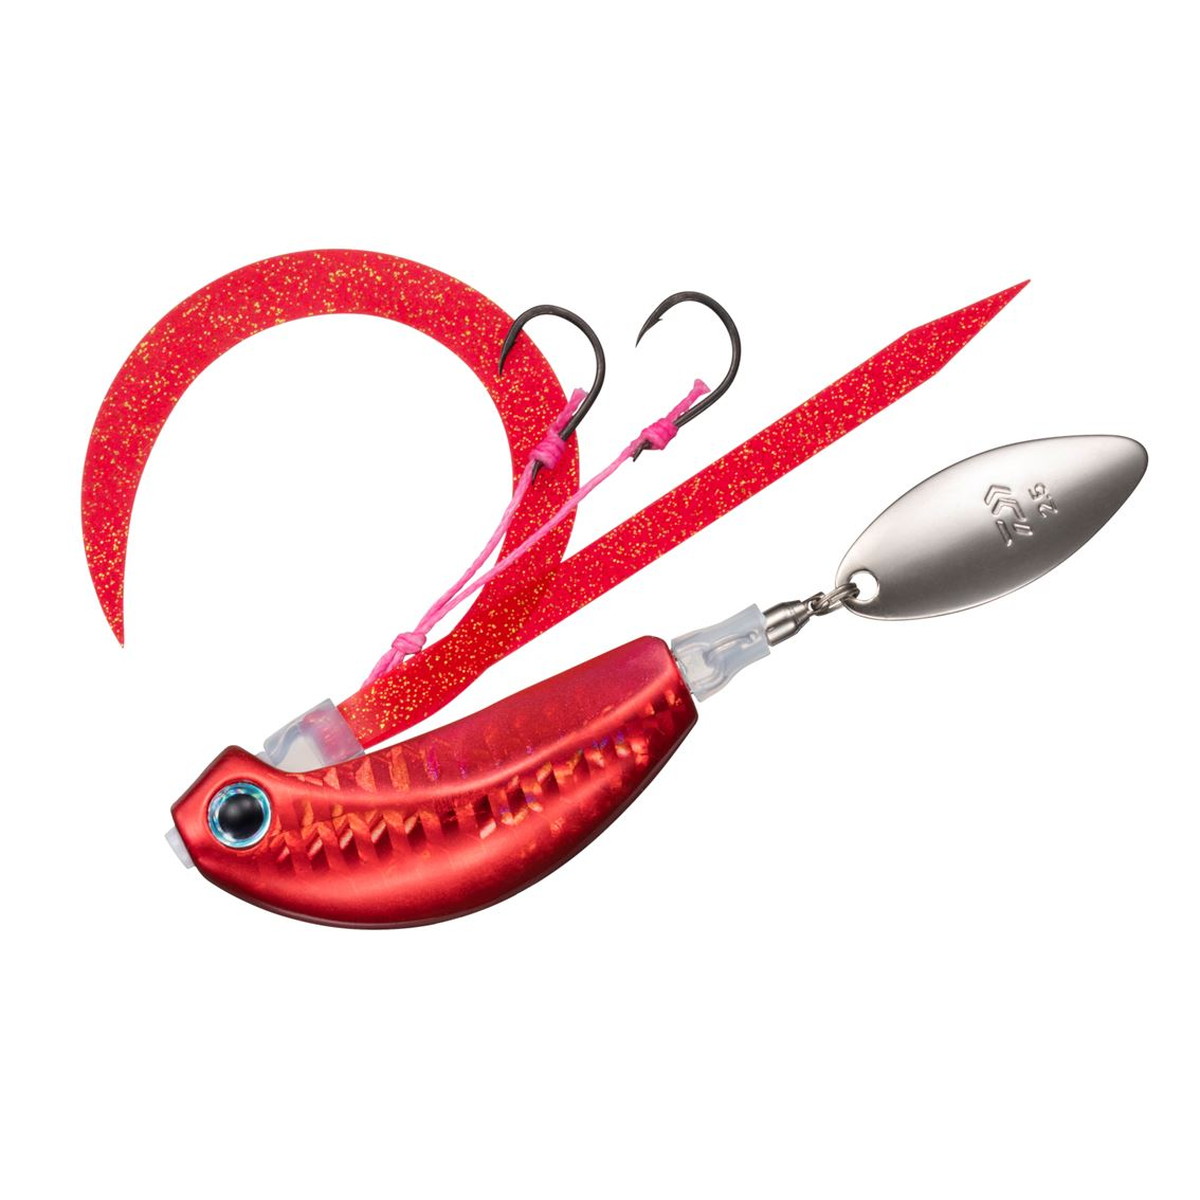 DAIWA（釣り） 紅牙ブレードブレイカー TG 玉神 60g PH紅牙レッド 紅牙 メタルジグの商品画像